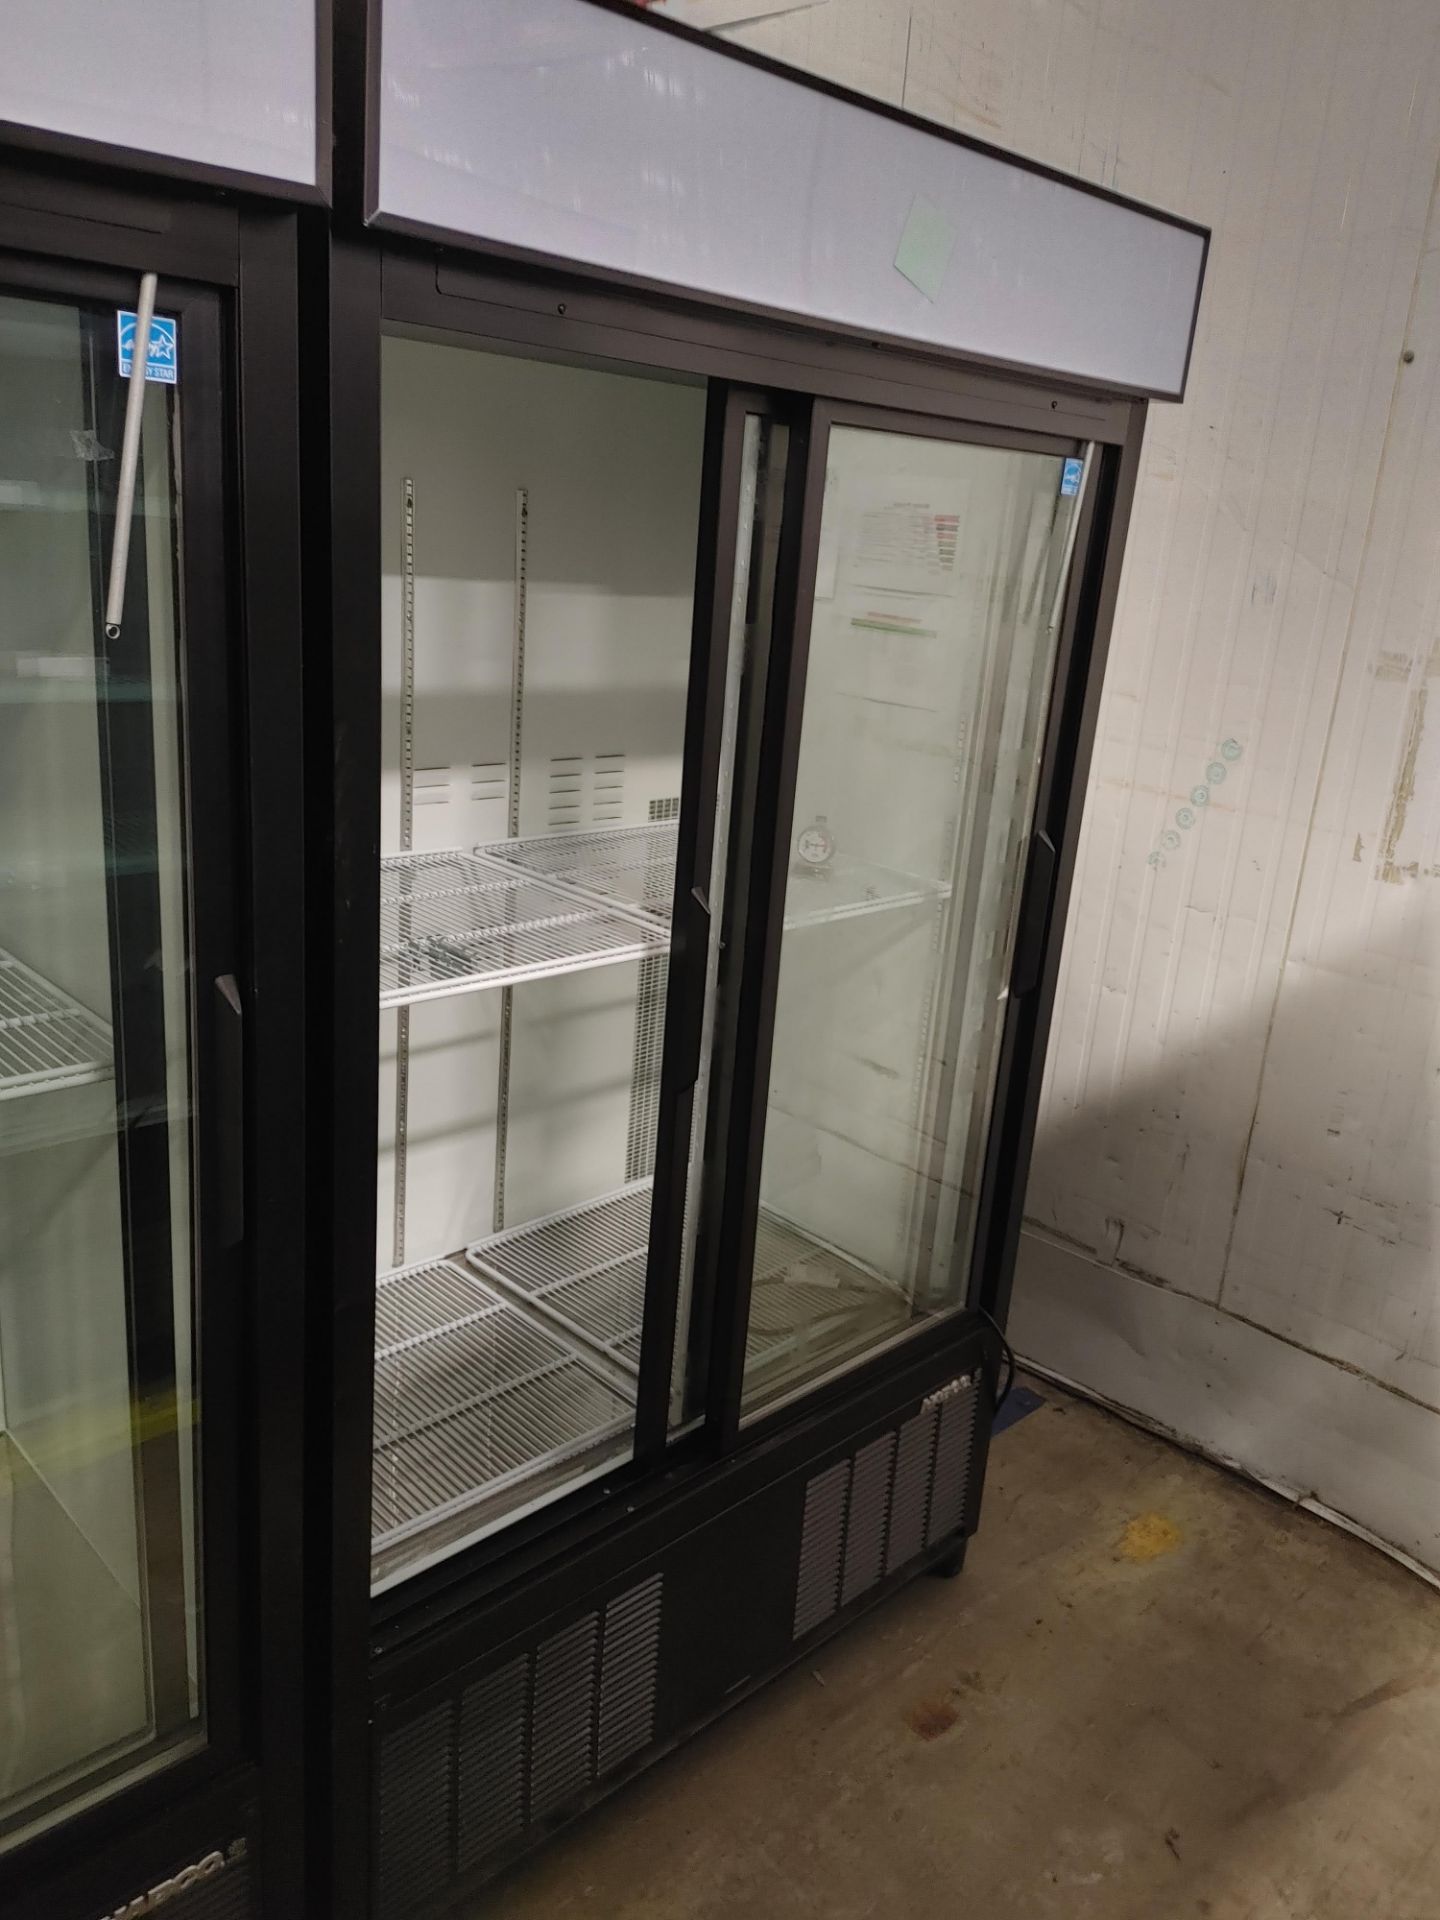 Habco "ESM42HC" 2 Door Glass Front Refrigerator S/N 420662189